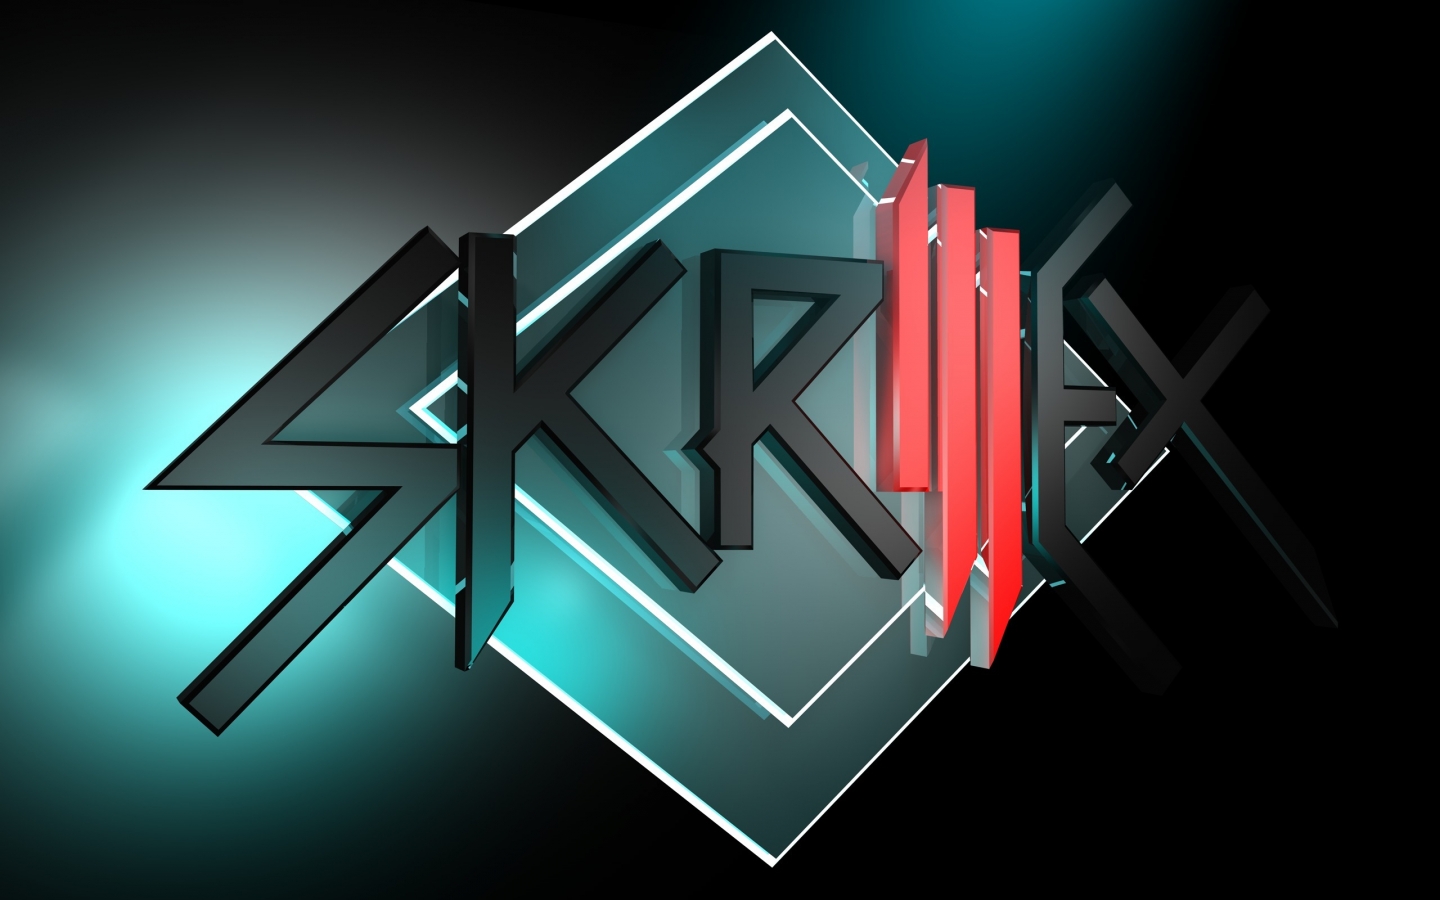 Skrillex Logo for 1440 x 900 widescreen resolution